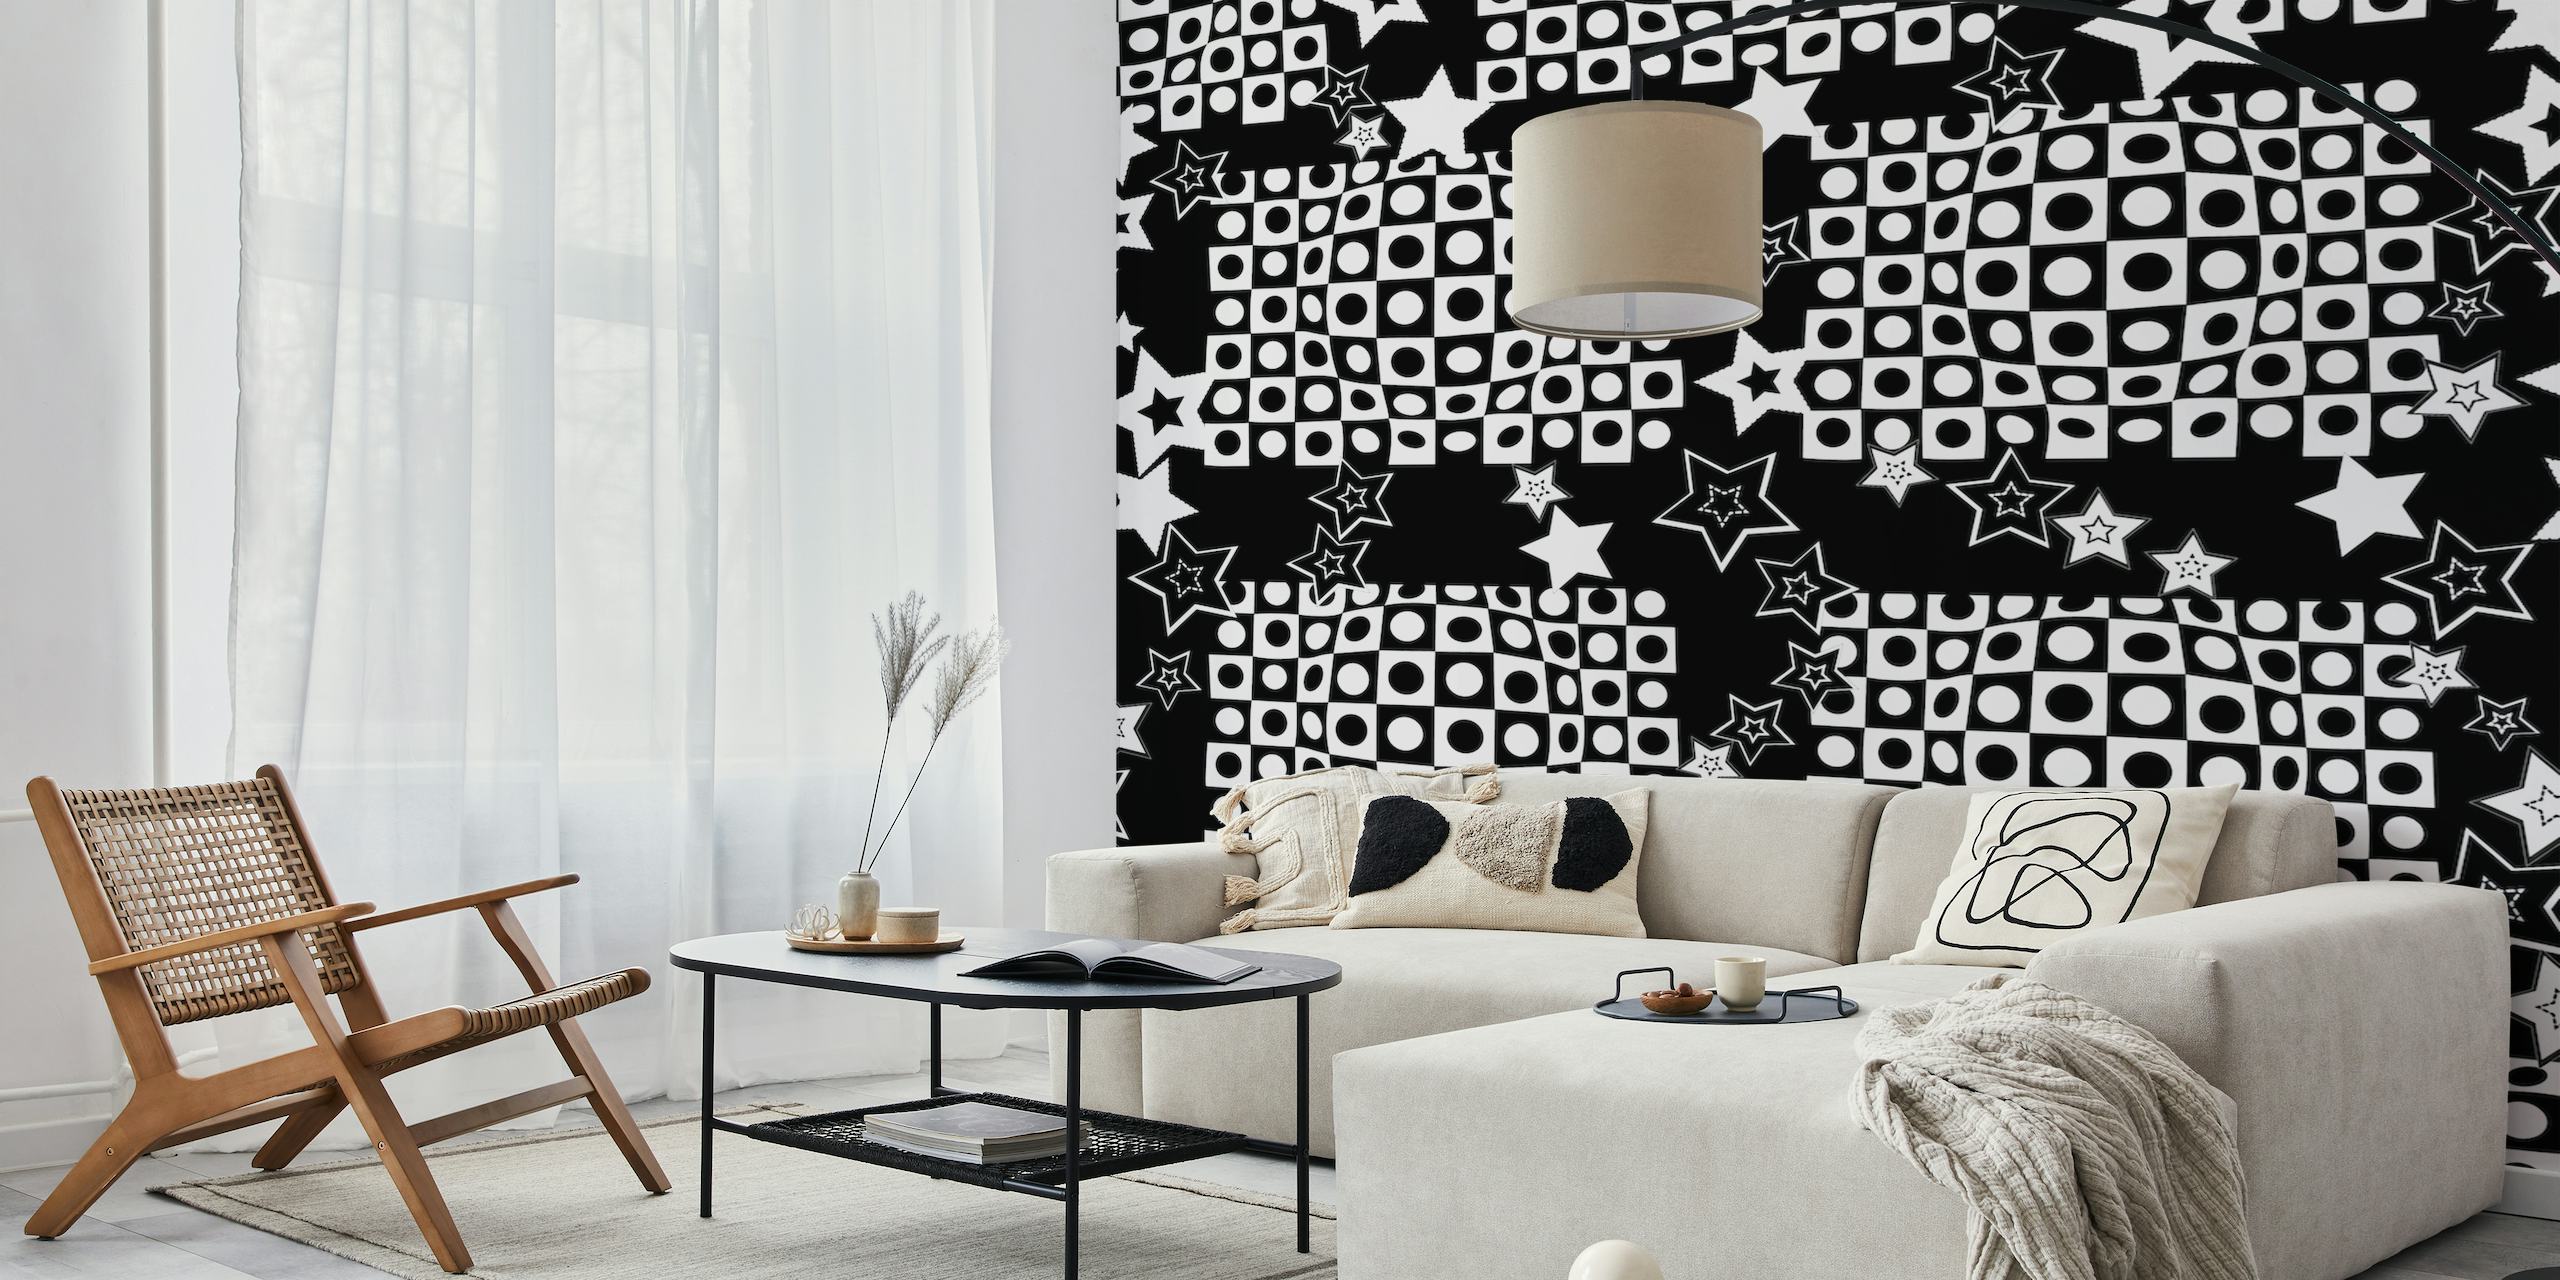 Crno-bijela optička iluzija zidna slika sa zvijezdama za moderno uređenje sobe